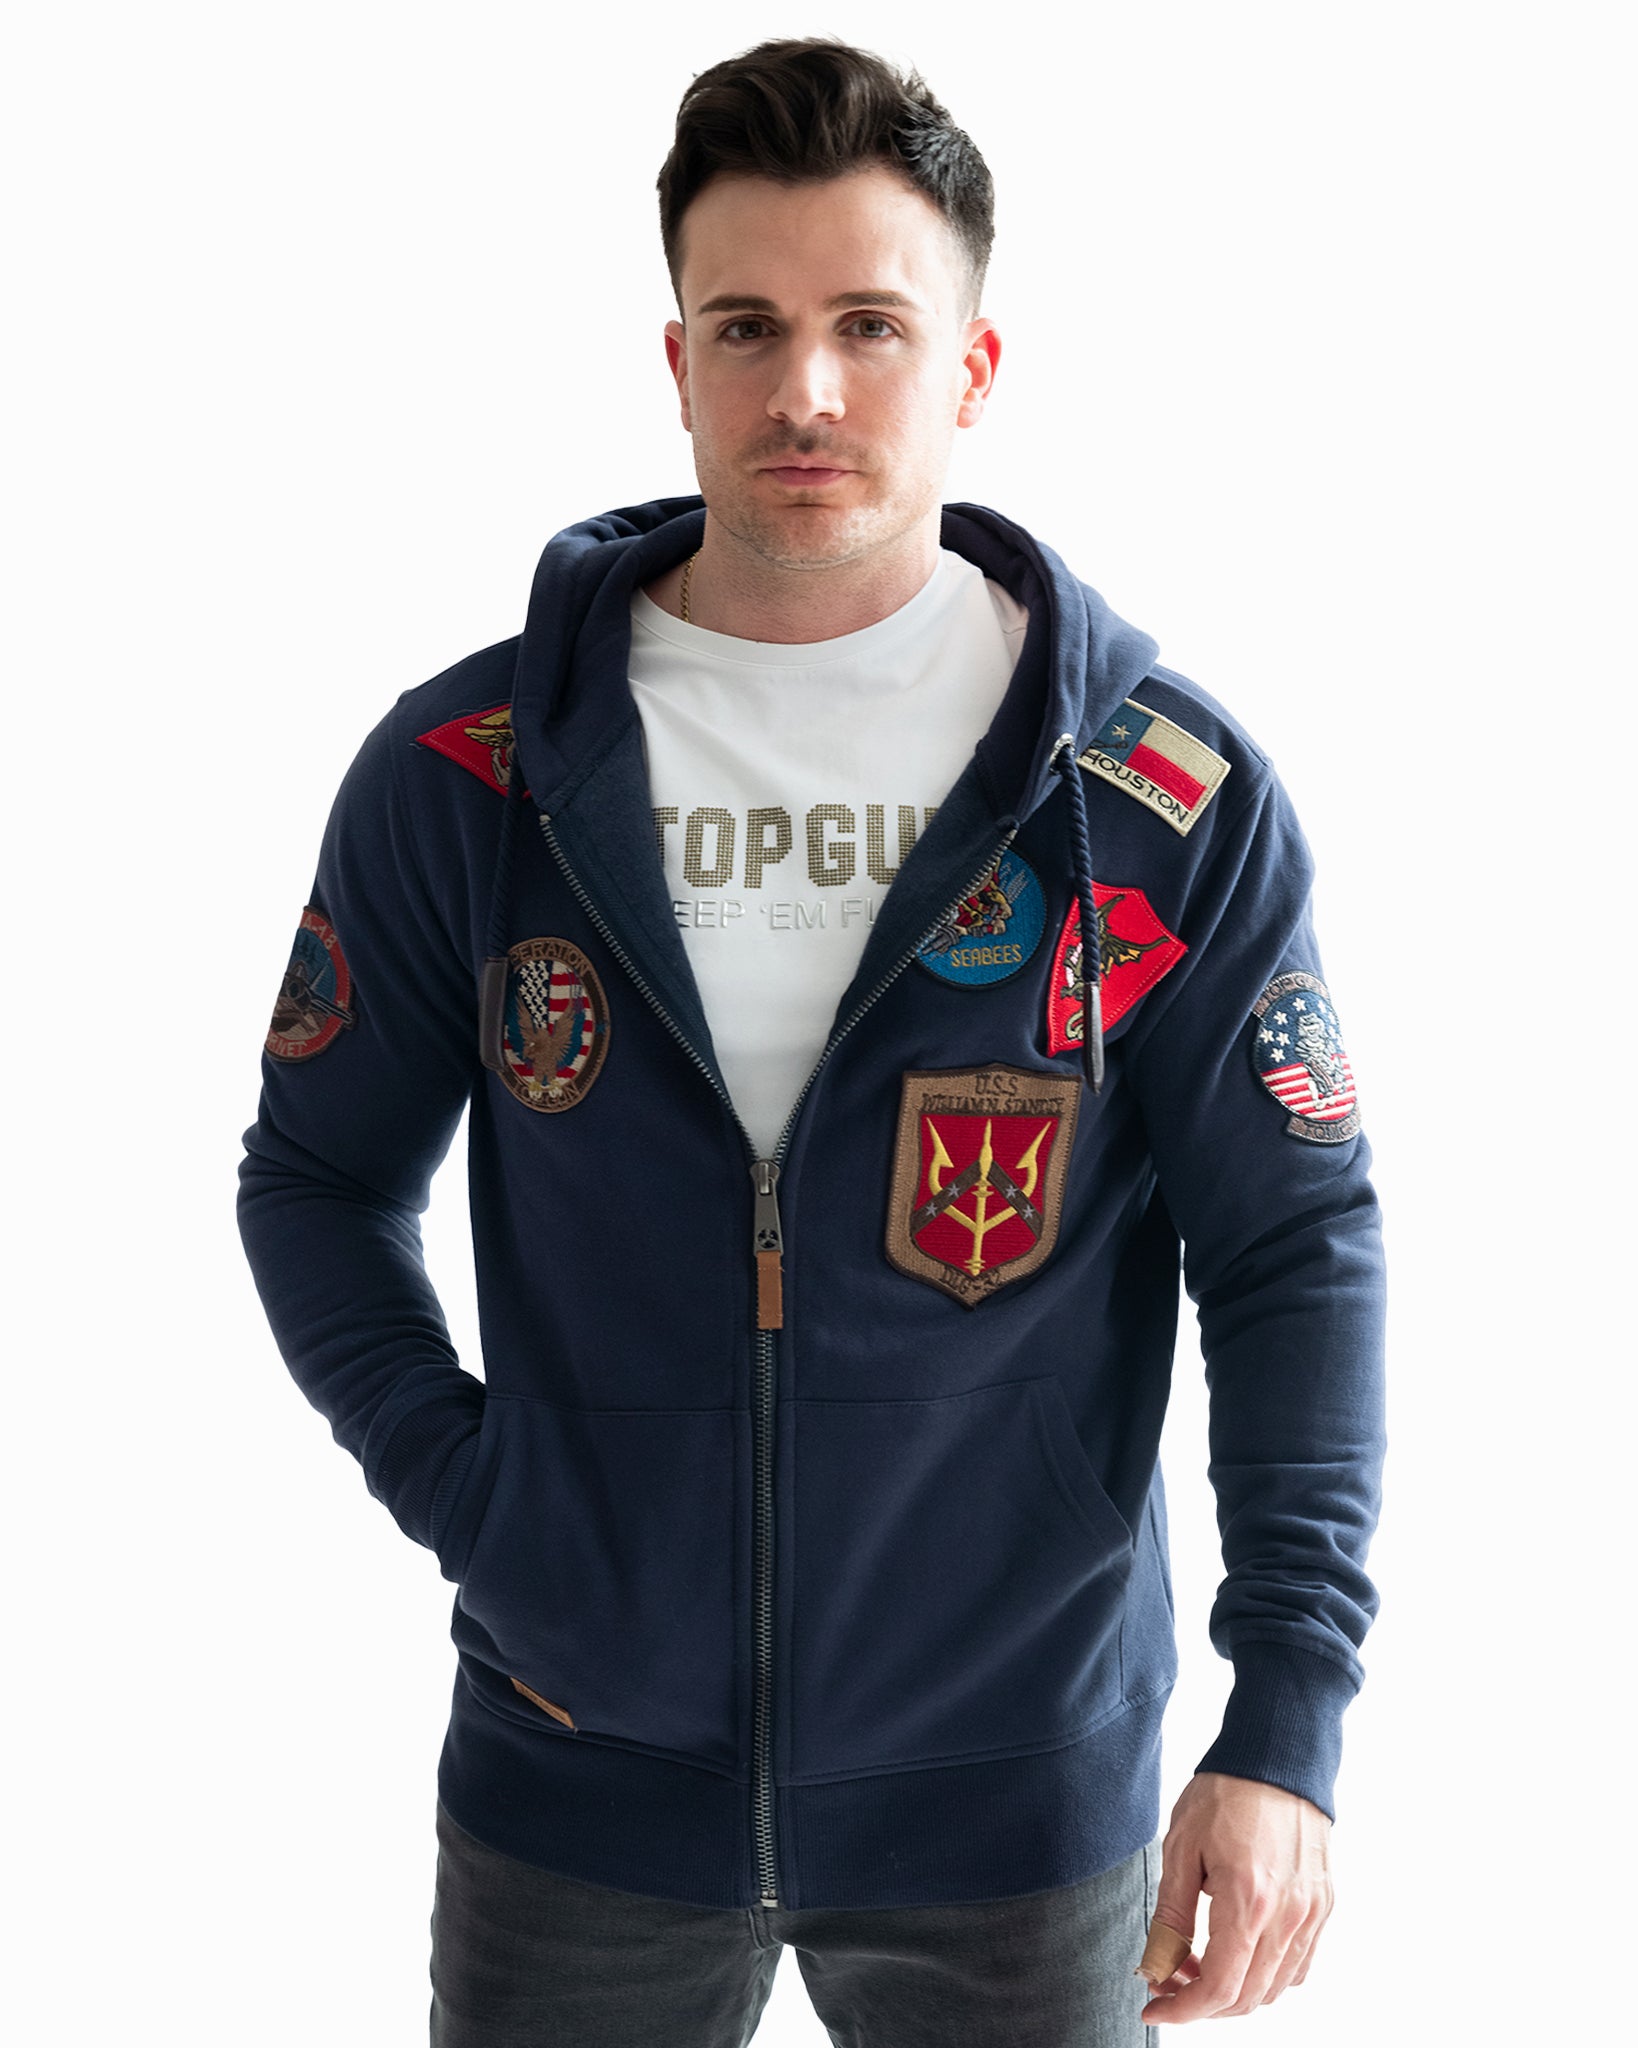 Men's Hoodies & Sweatshirts  The Top Gun® Official Store – Top